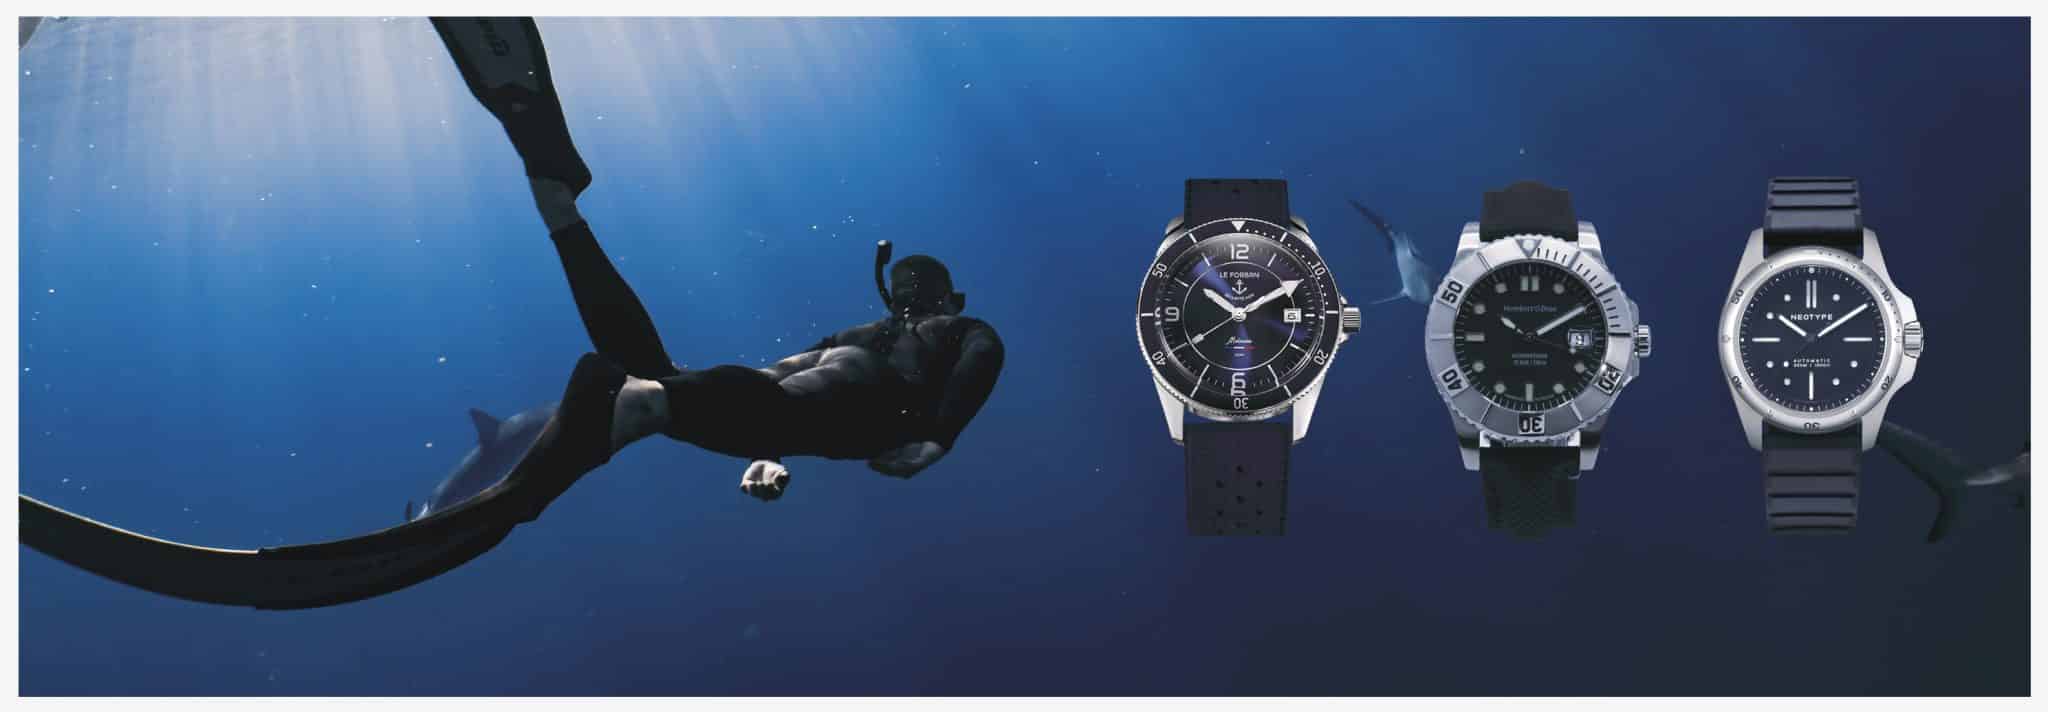 Les montres, reines des profondeurs océaniques